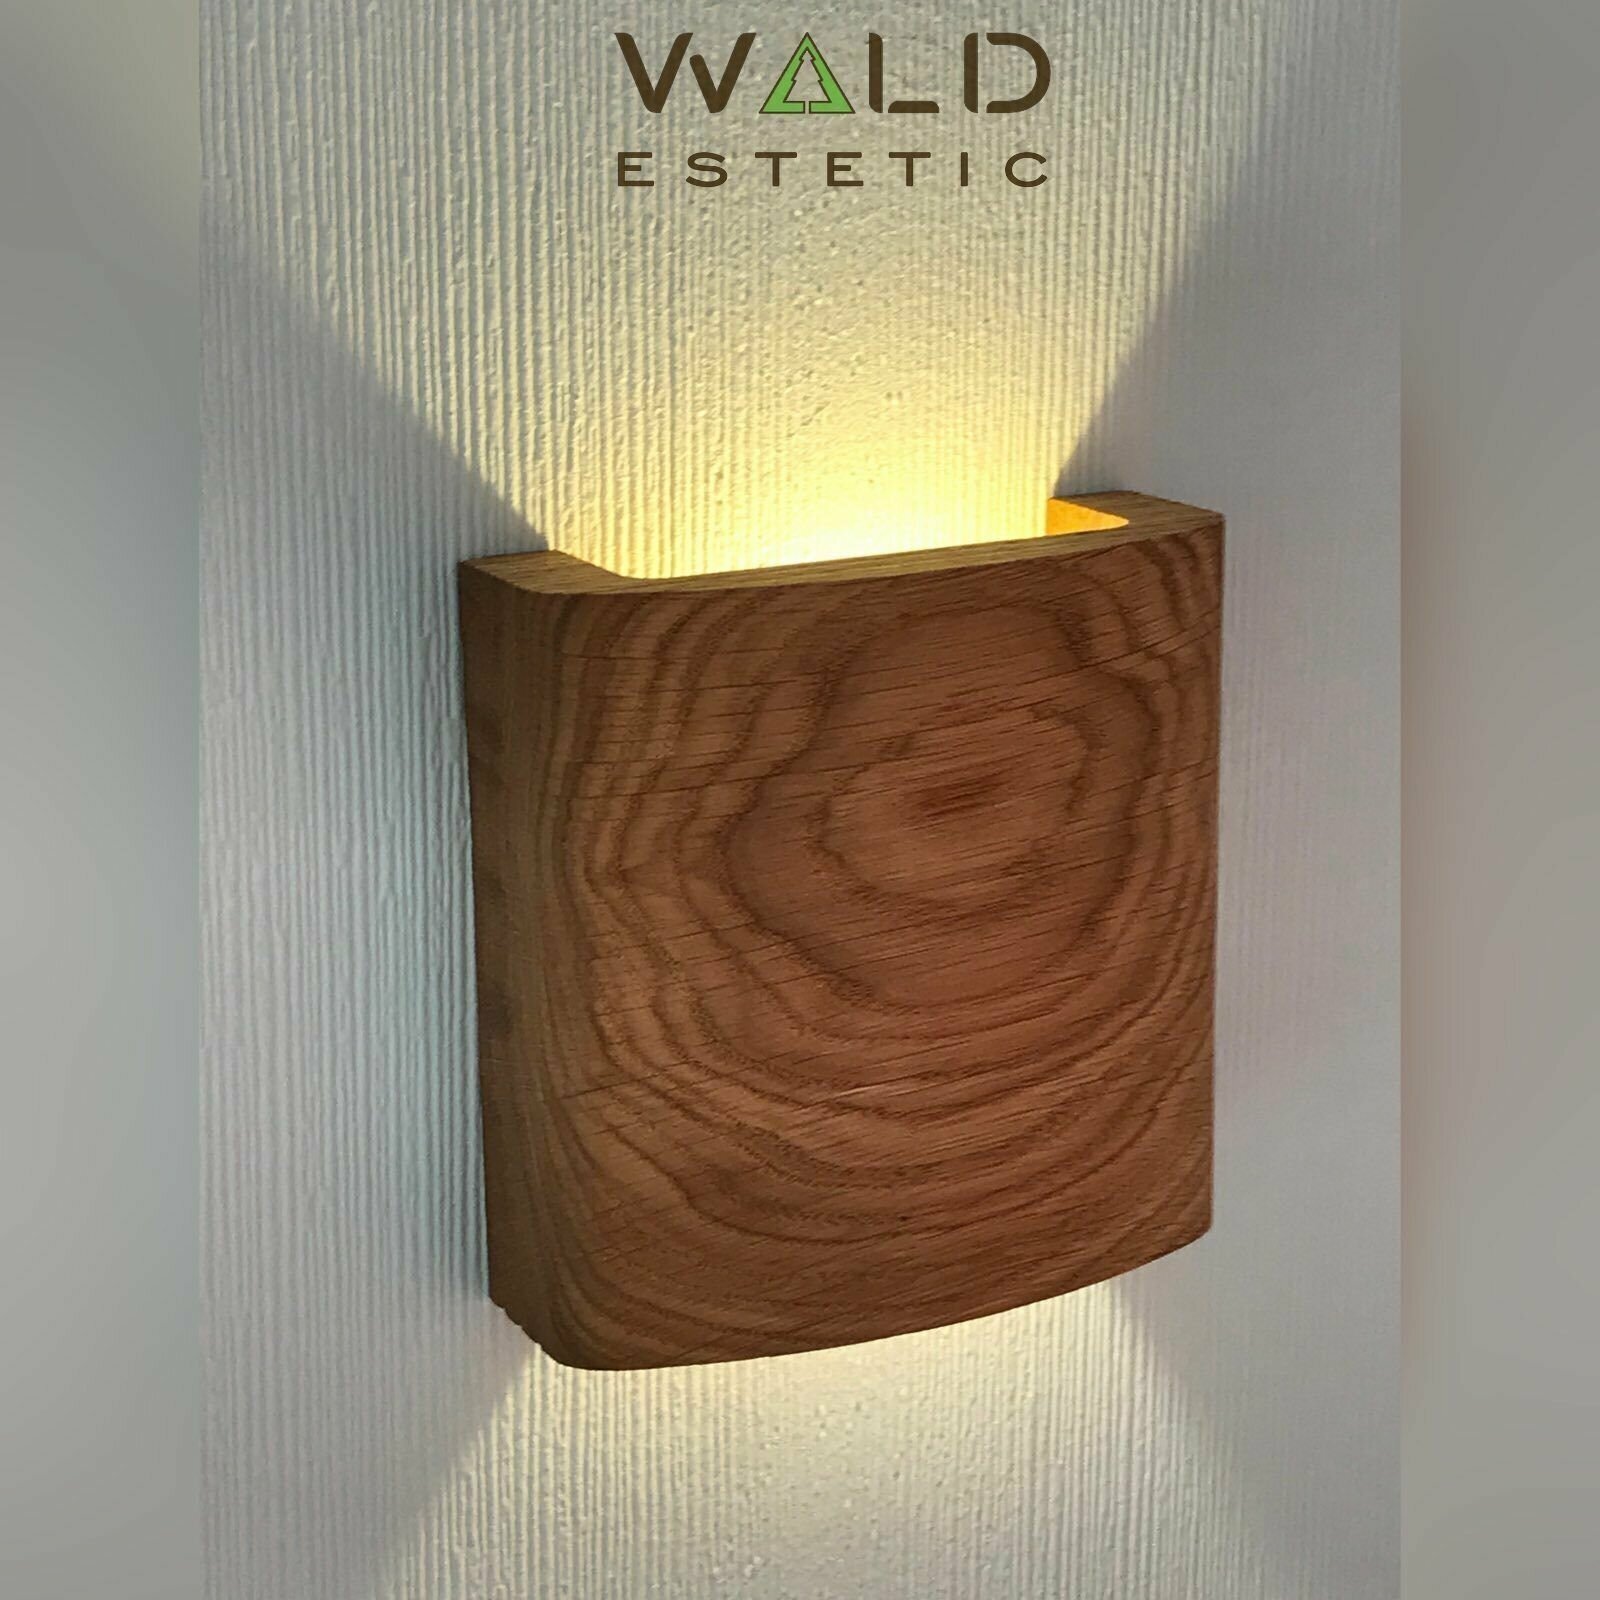 Светильник настенный из дерева HILD от Wald Estetic